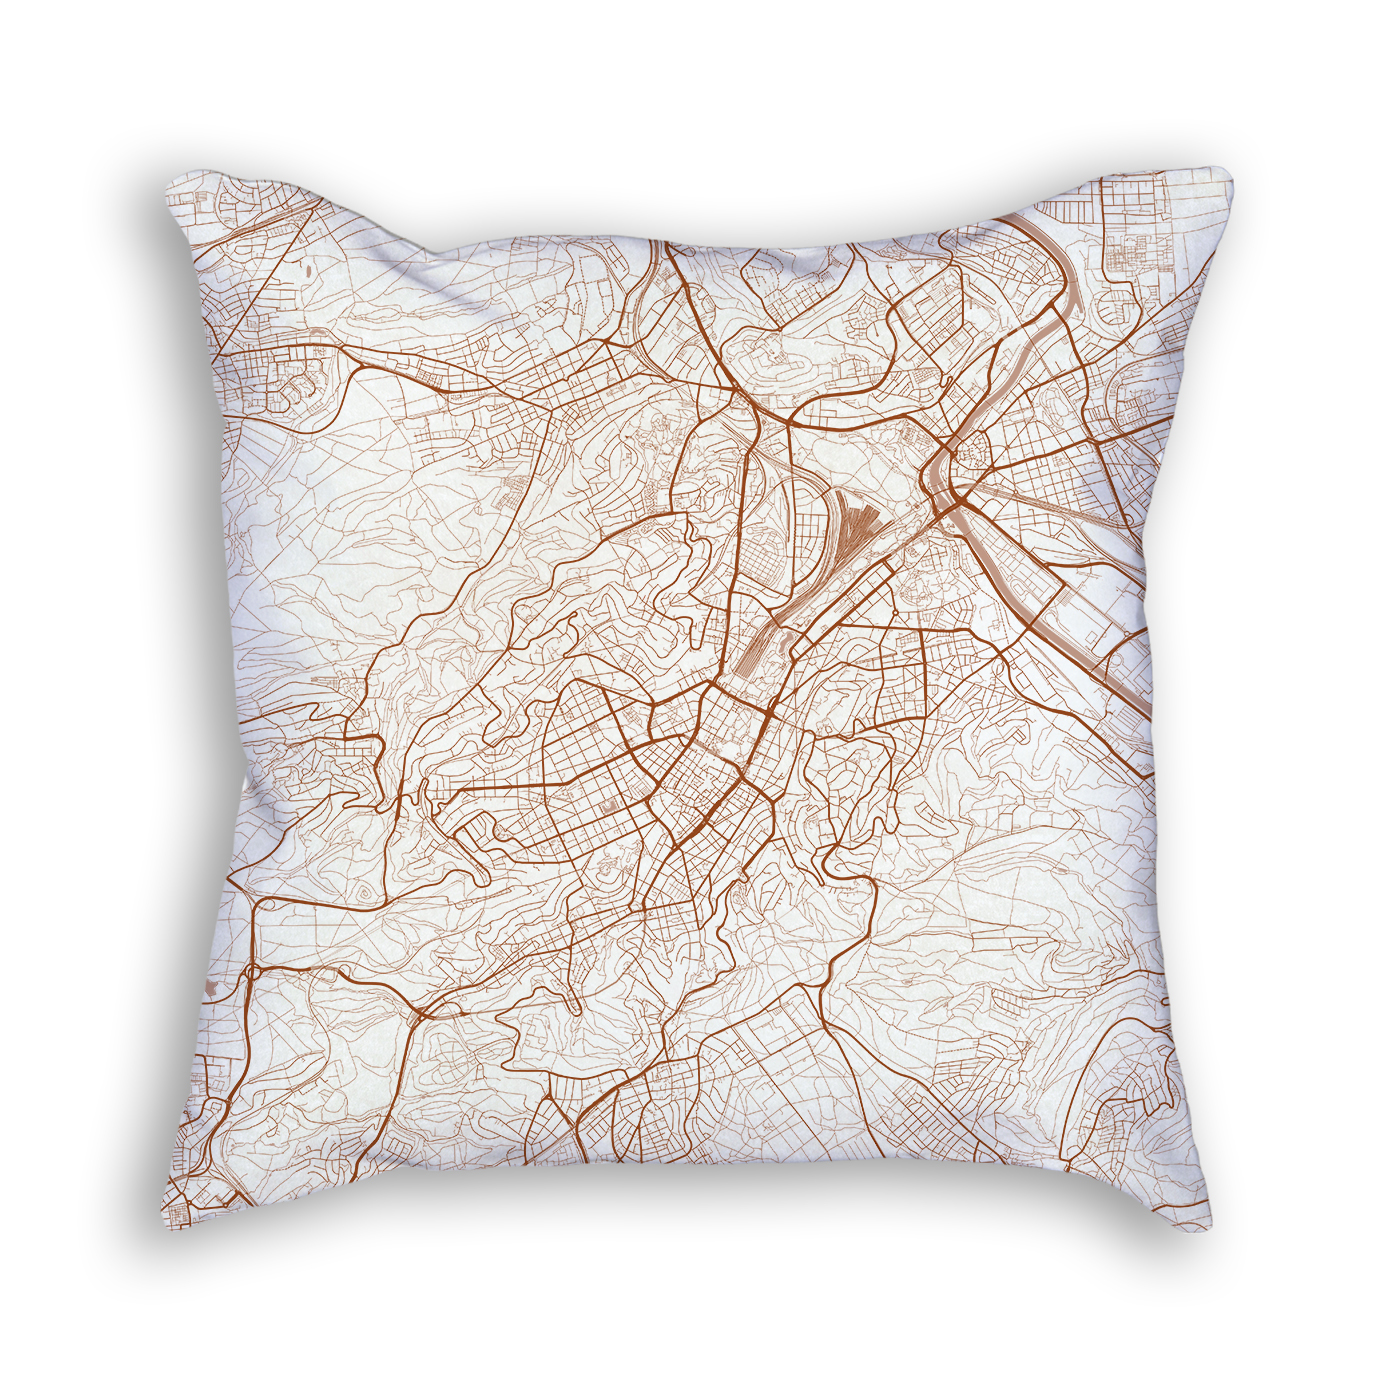 Stuttgart Germany City Map Art Decorative Throw Pillow